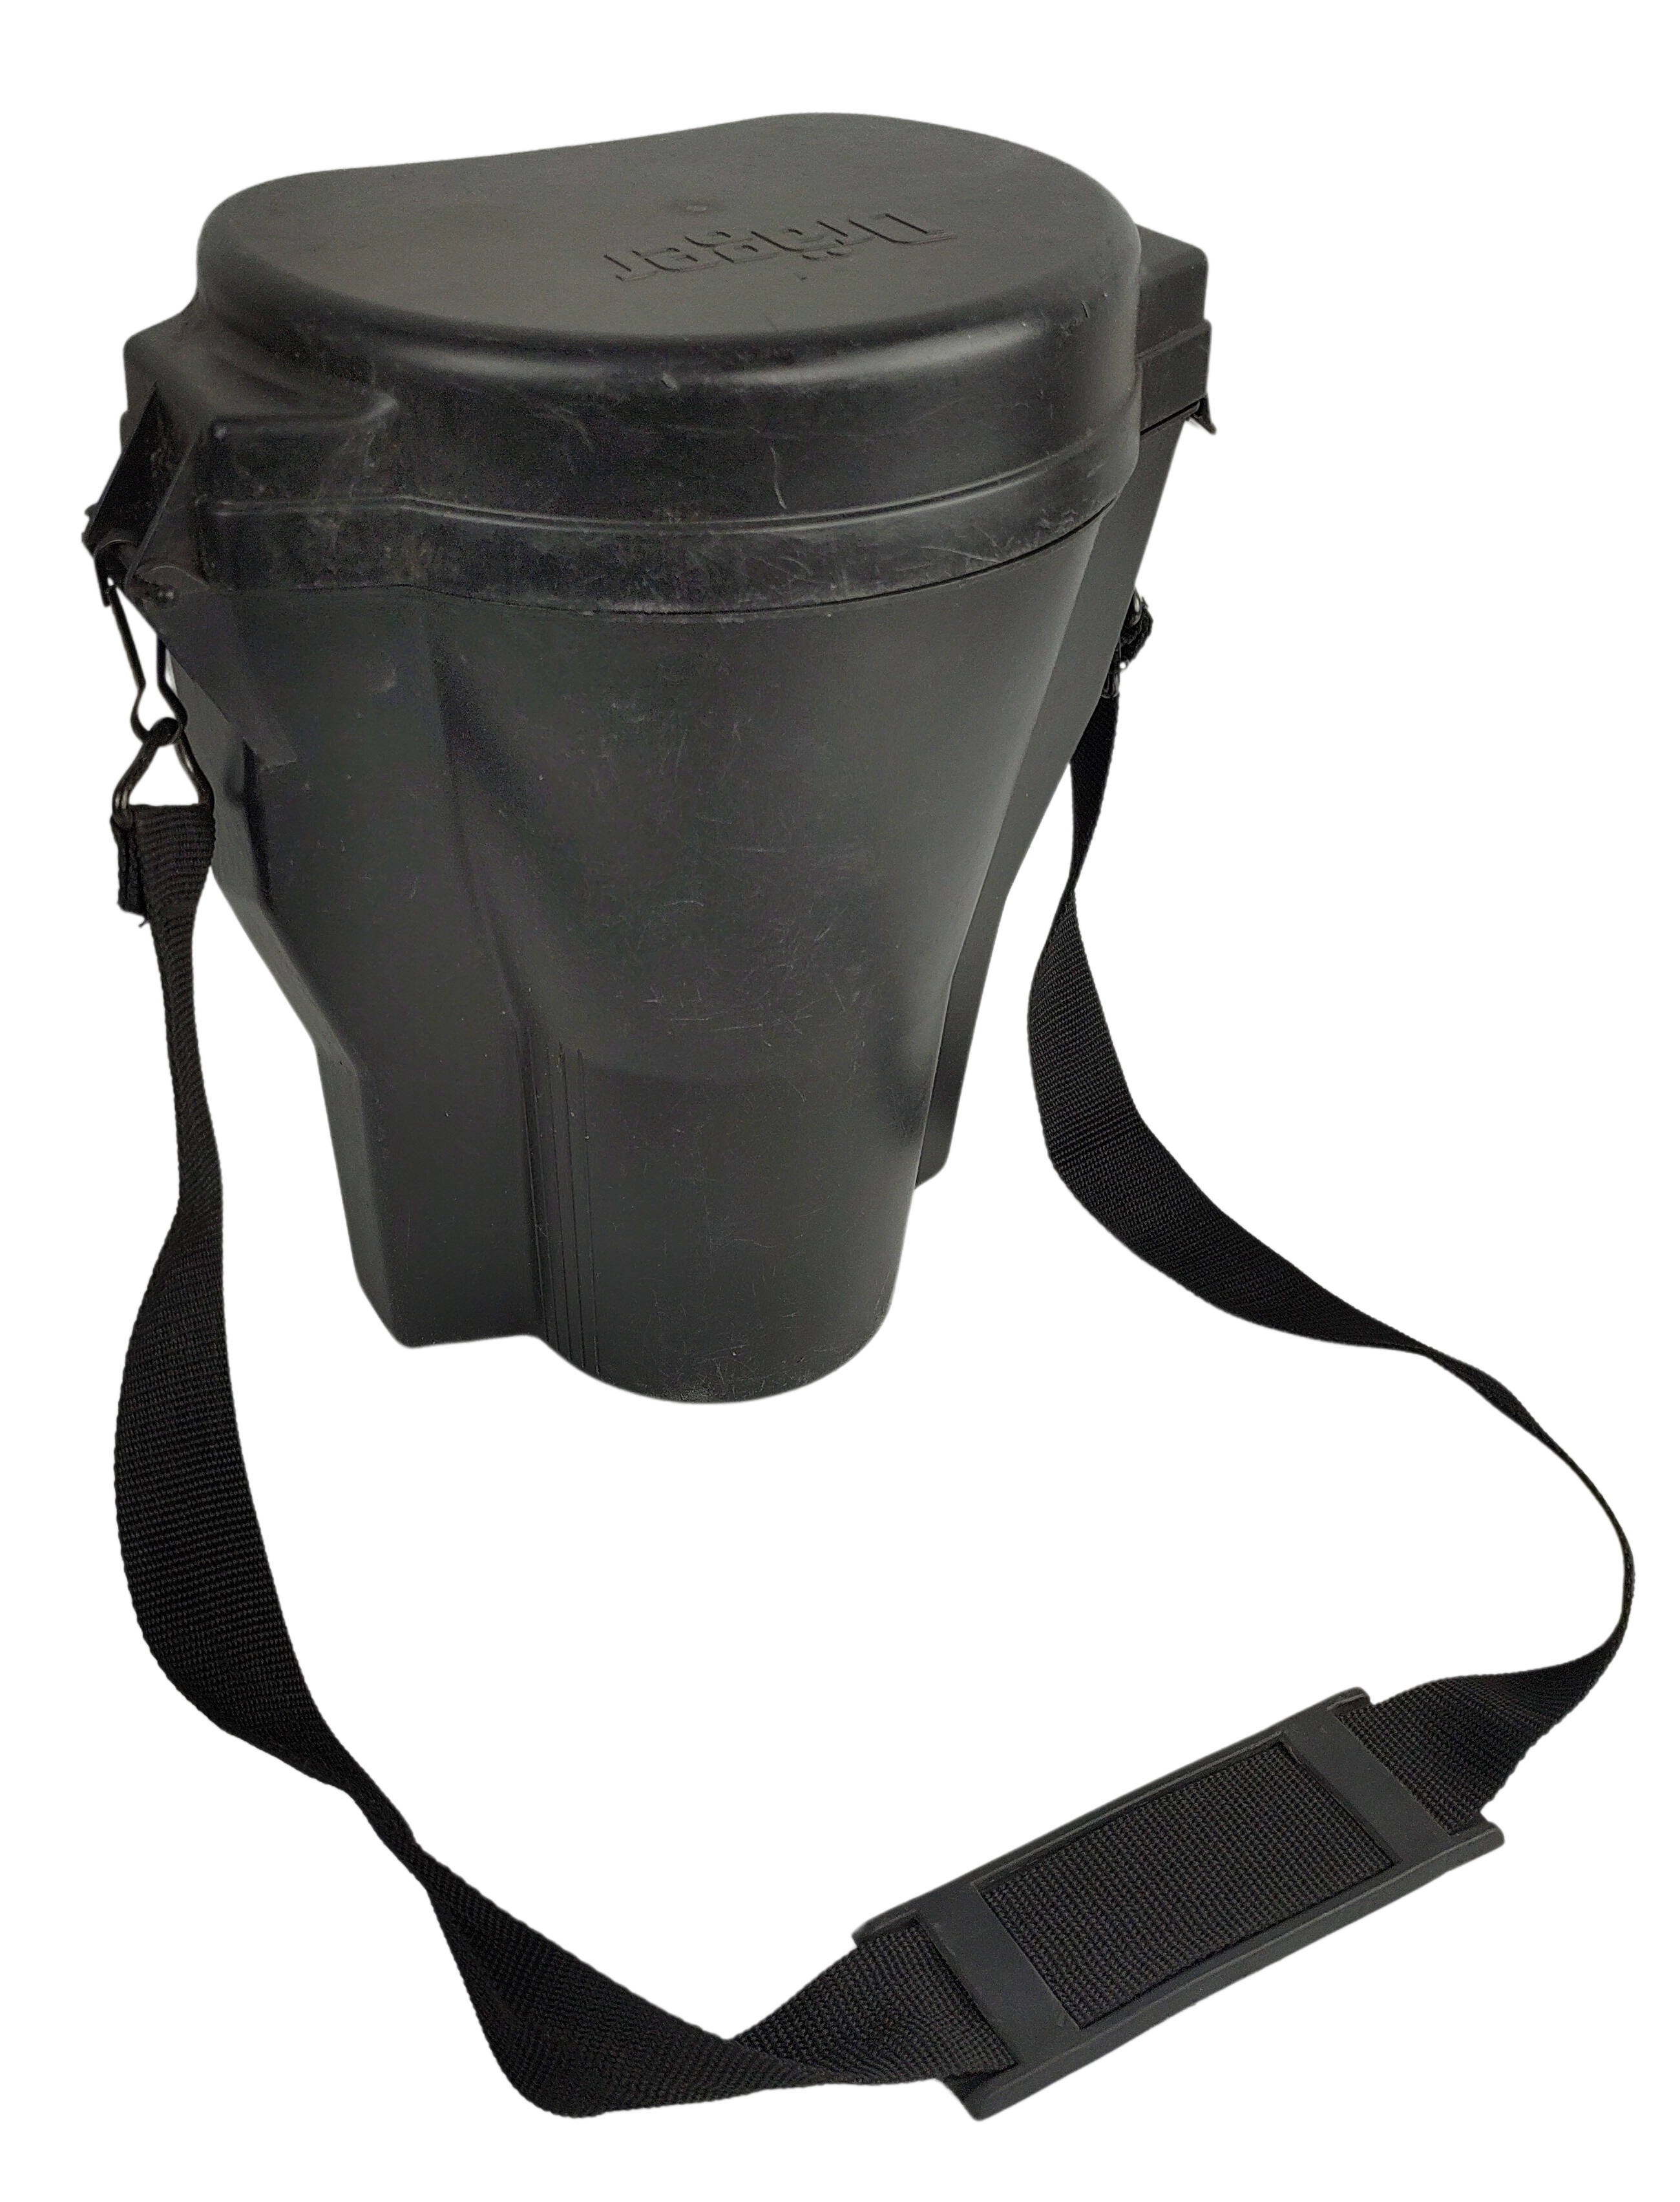 Box úložný Dräger Mabox pouzdro na plynovou masku plast NBC CBRN použitý